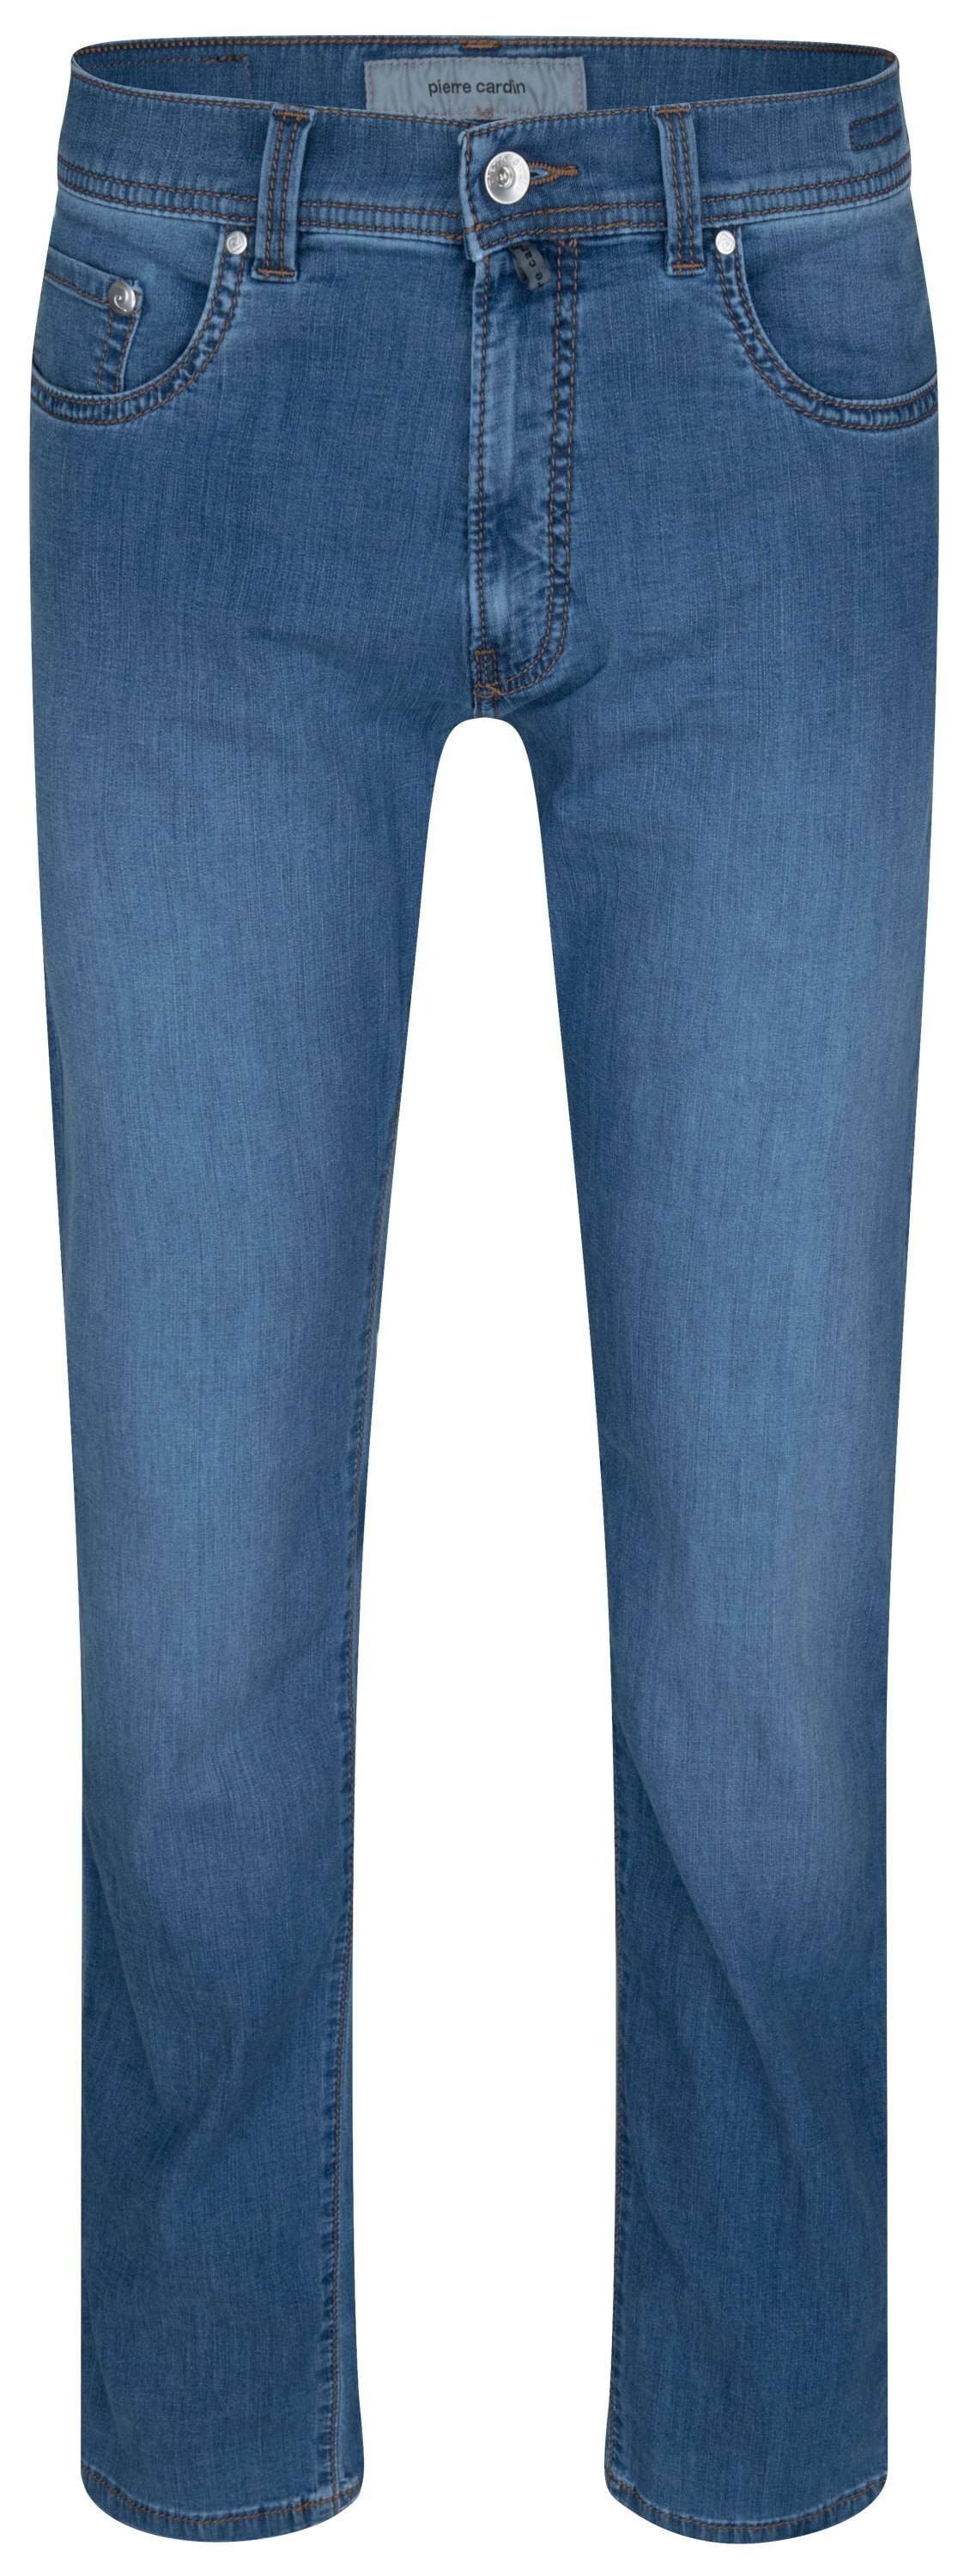 CARDIN Cardin LYON 5-Pocket-Jeans TAPERED 7730.6837 34510 - blue fashion FUTURE Pierre PIERRE ocean